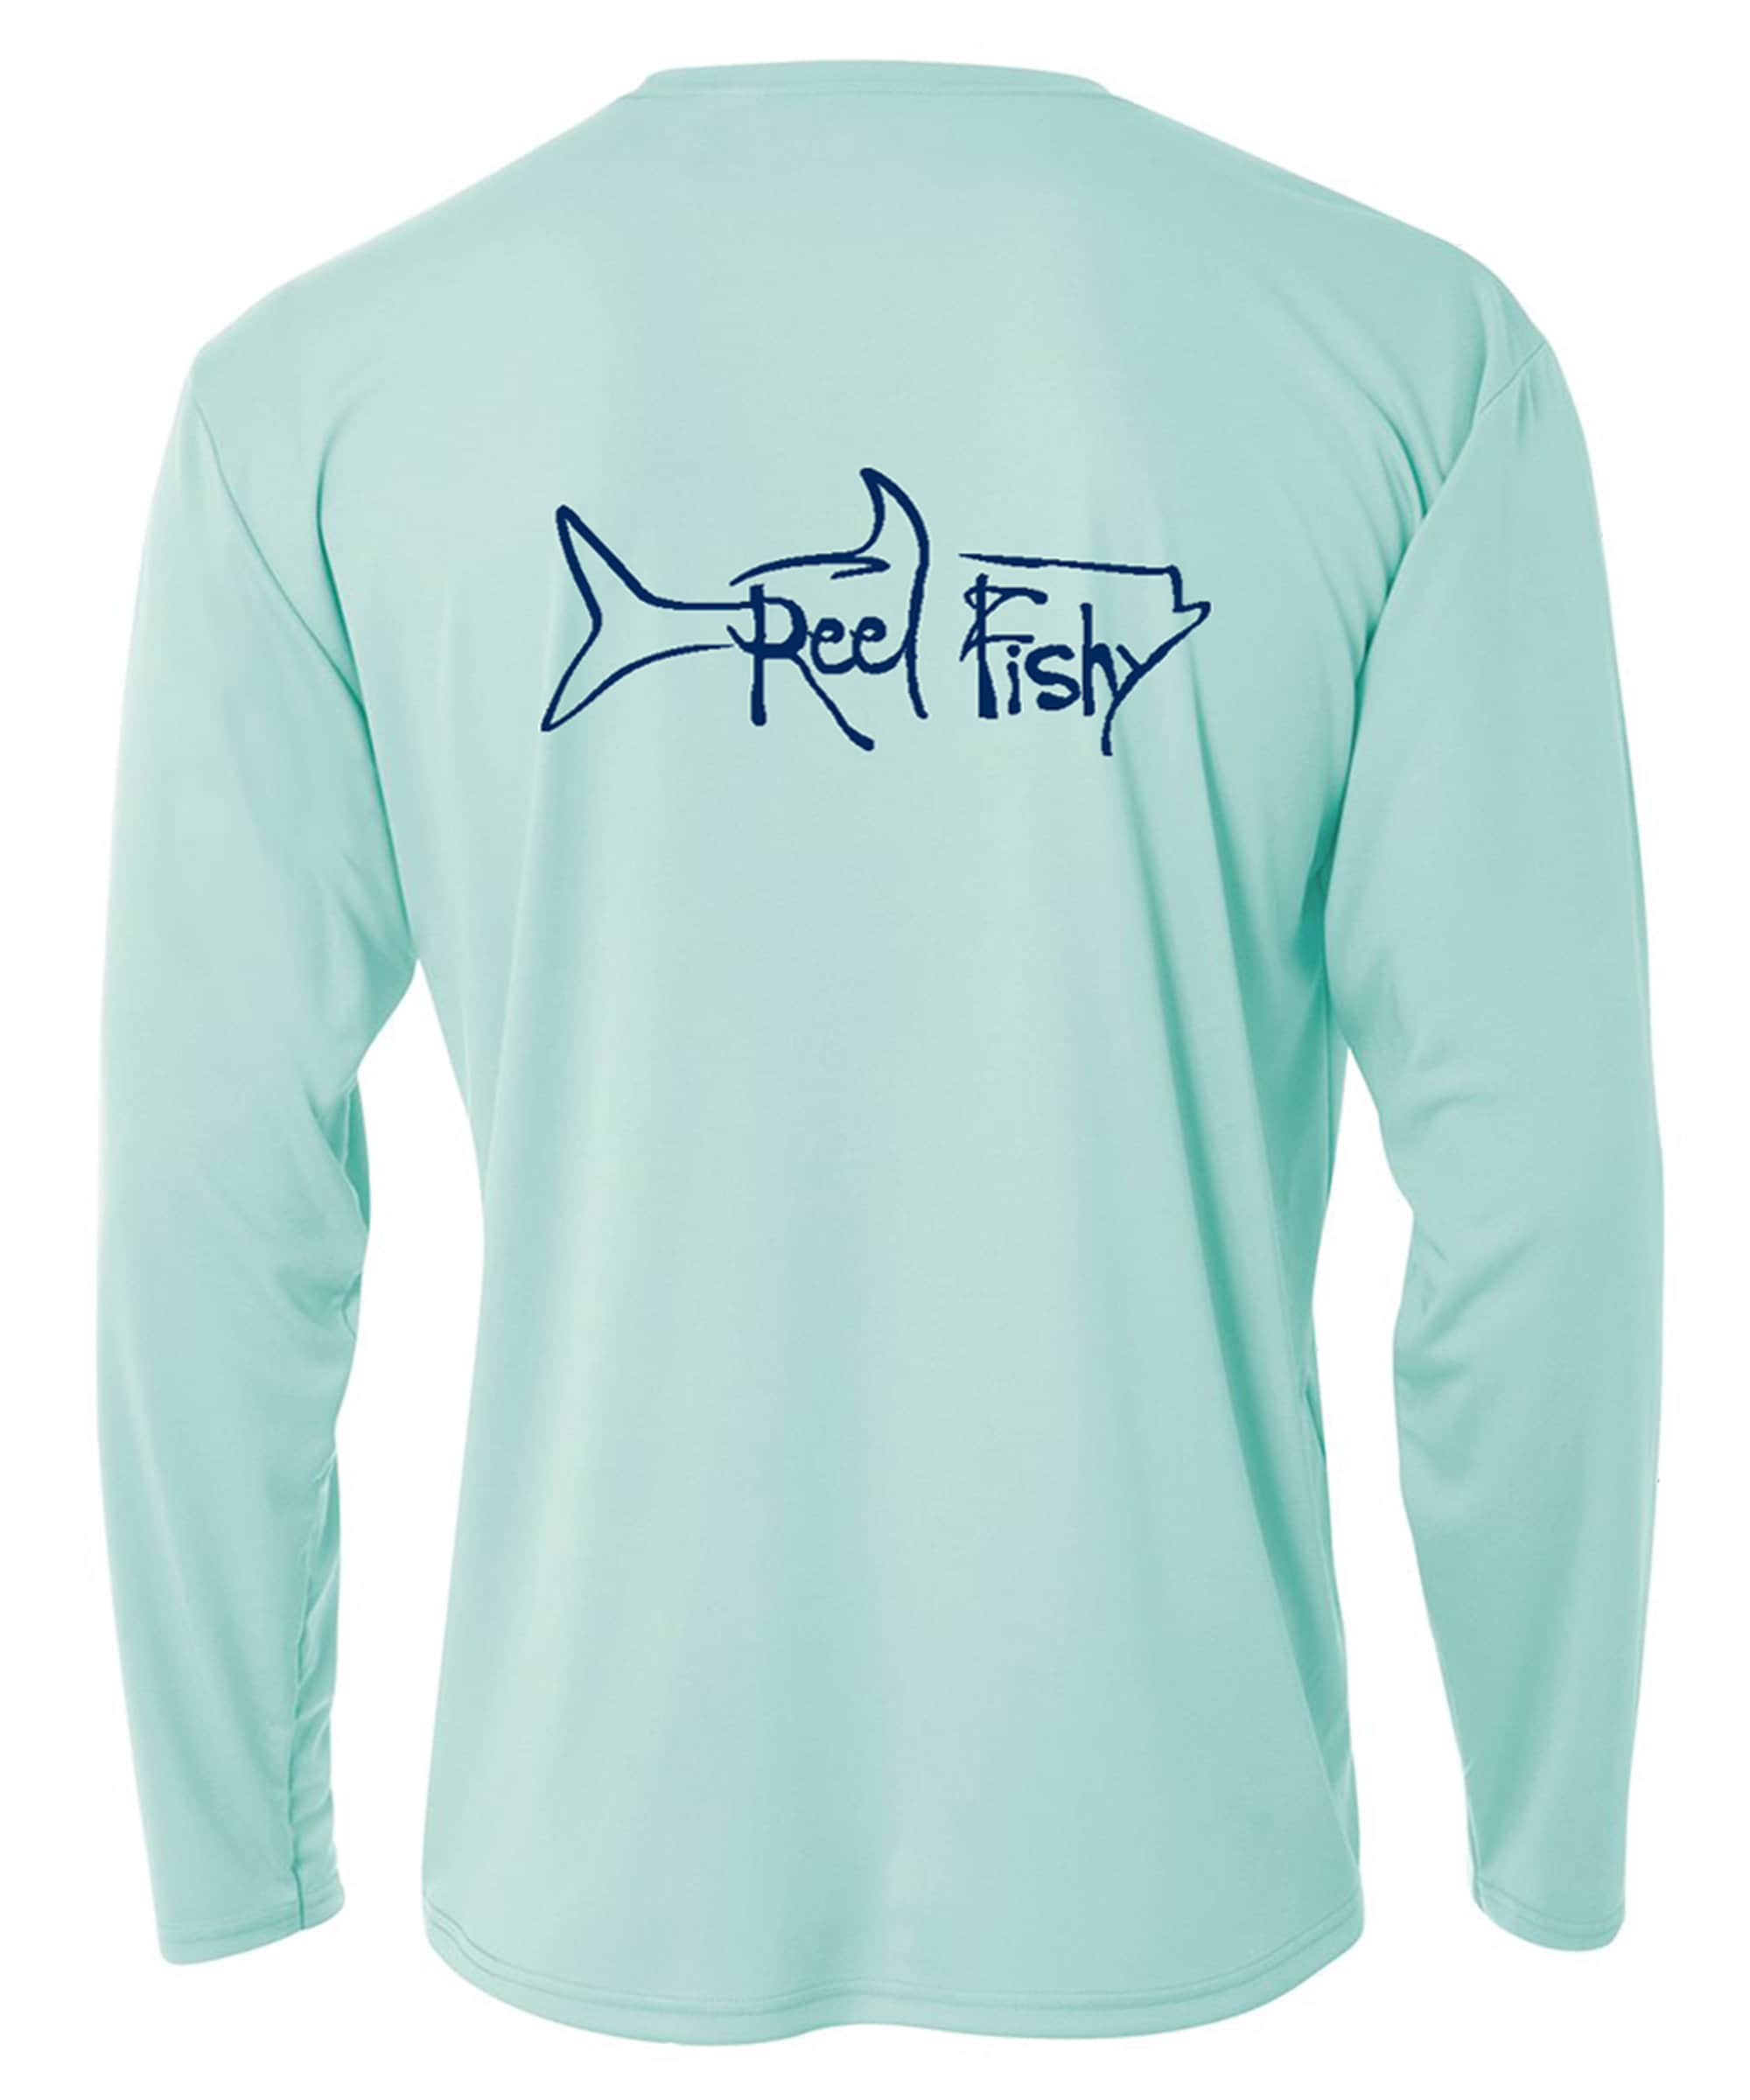 Buy Tarpon Fishing Long Sleeve Shirt, 50UV Sun Protection, Tarpon